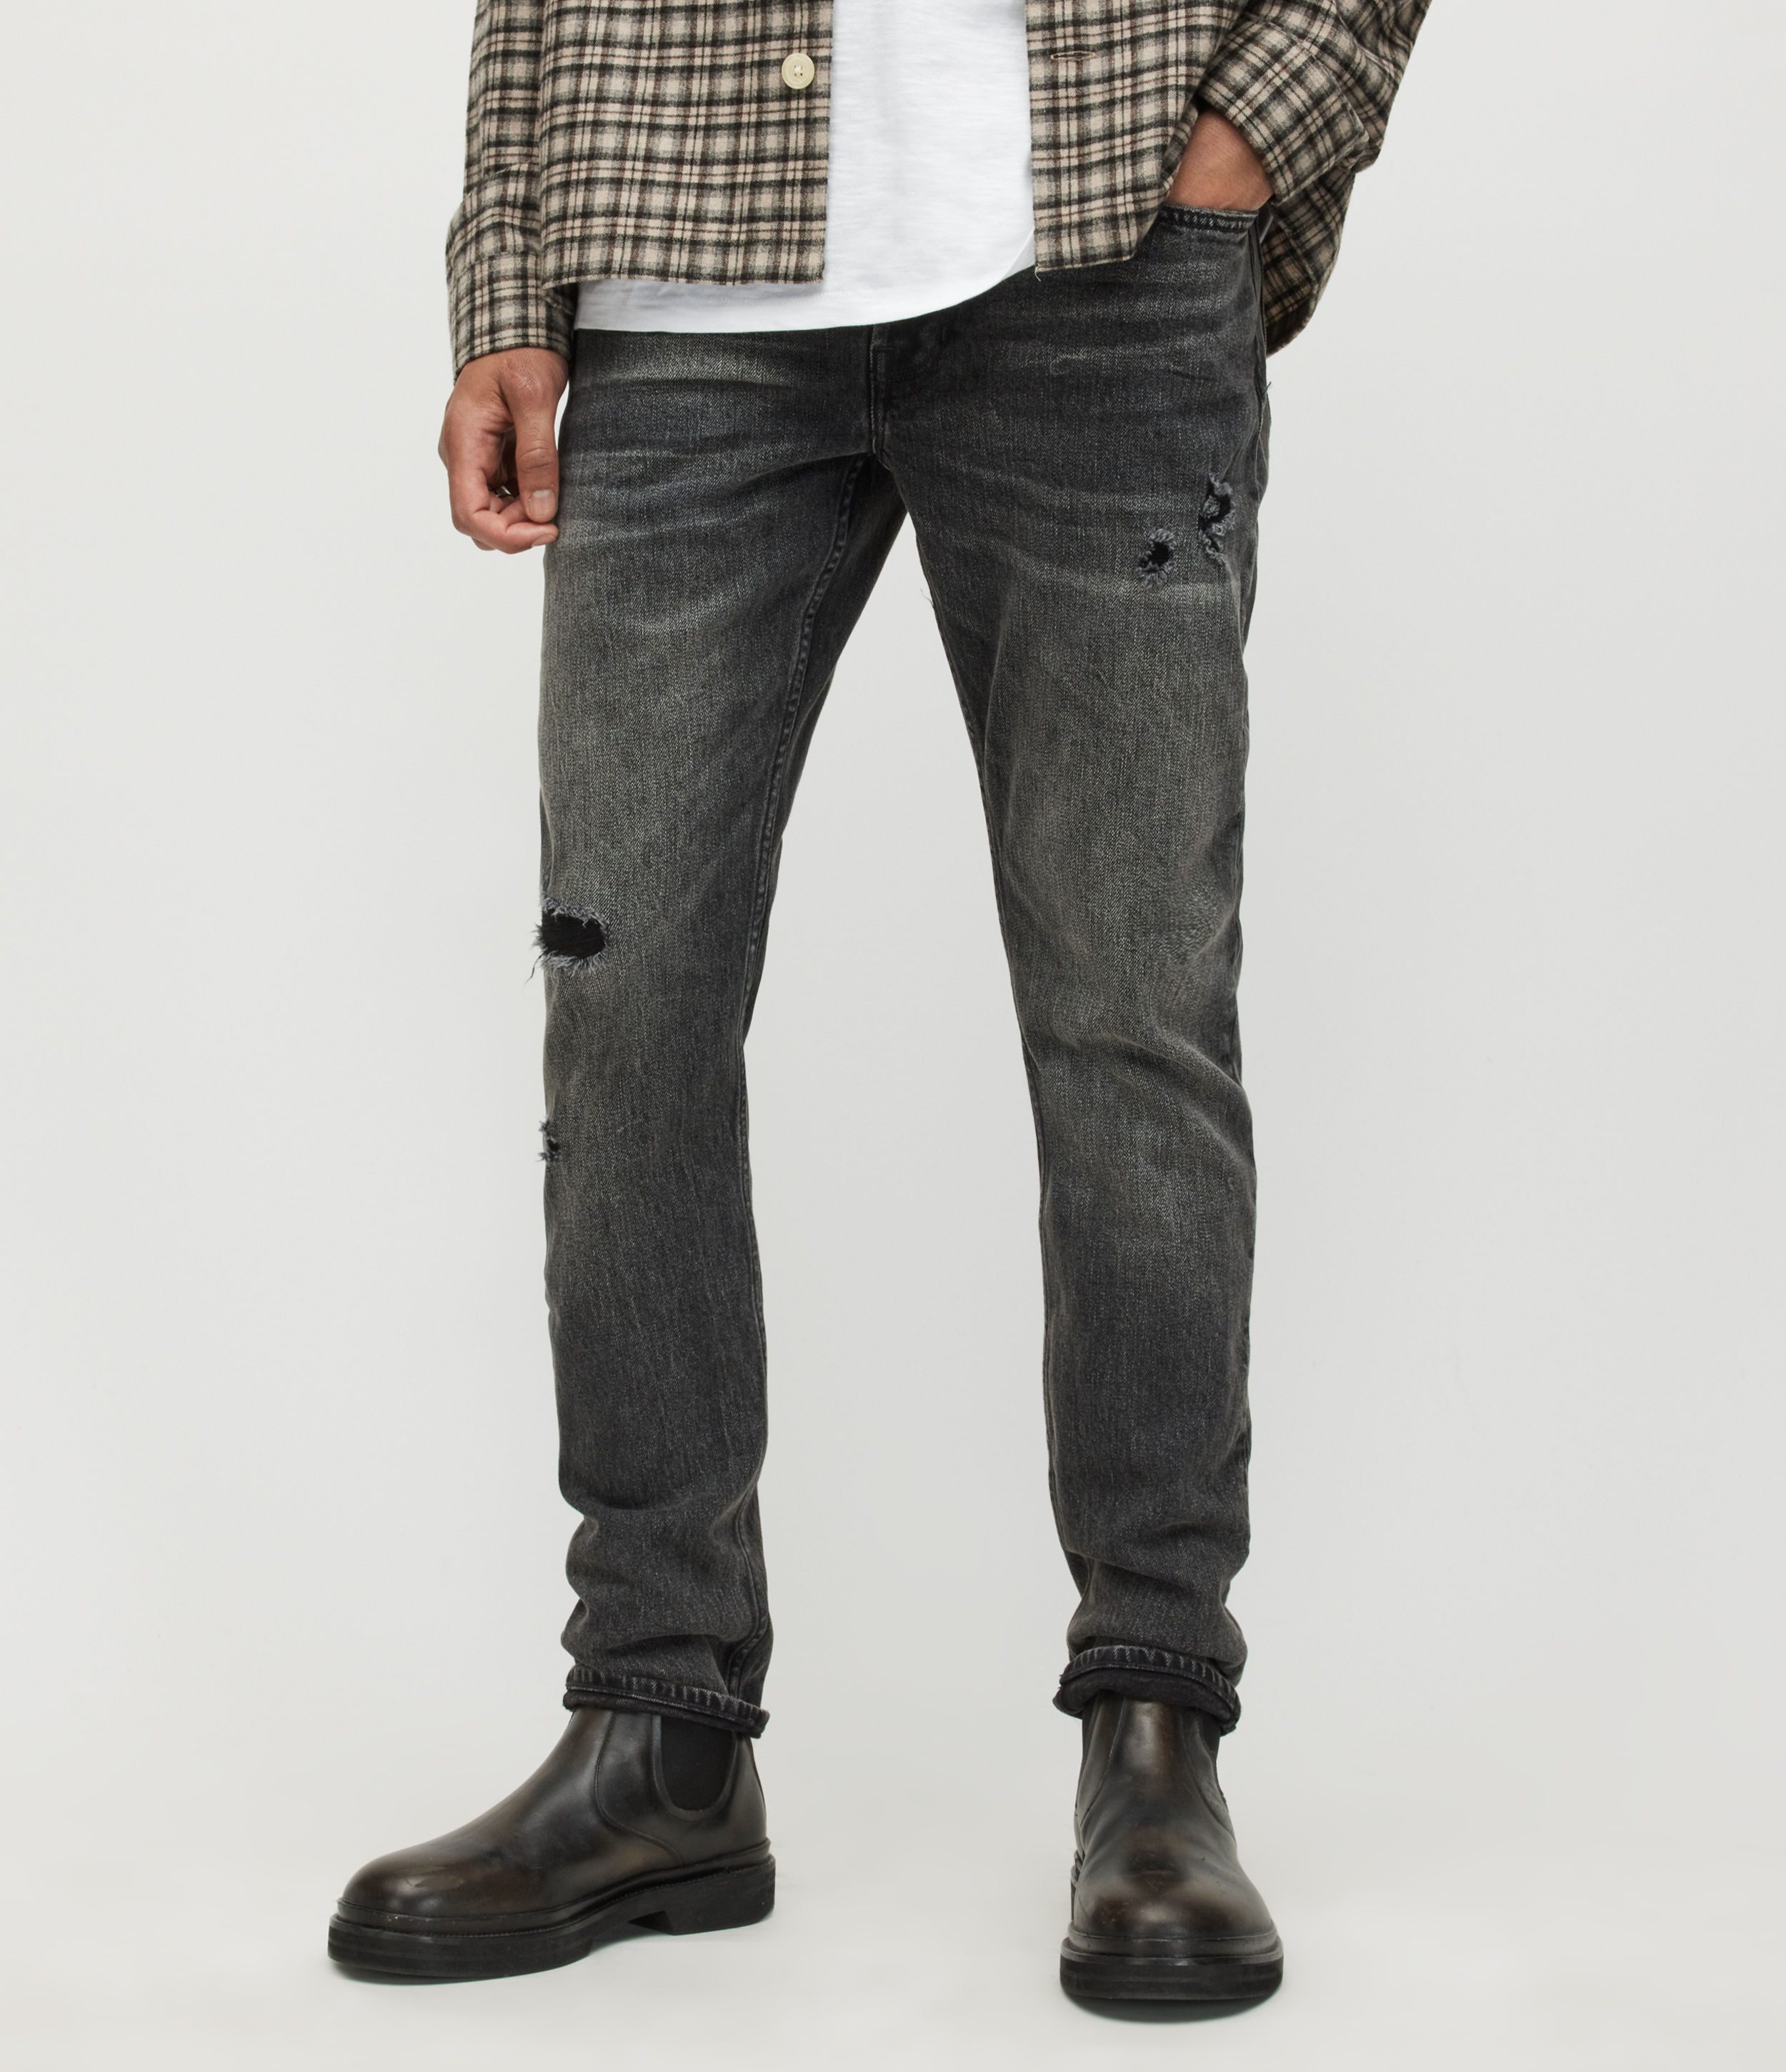 AllSaints Men’s Rex Slim Damaged Jeans, Washed Black, Size: 28/L30